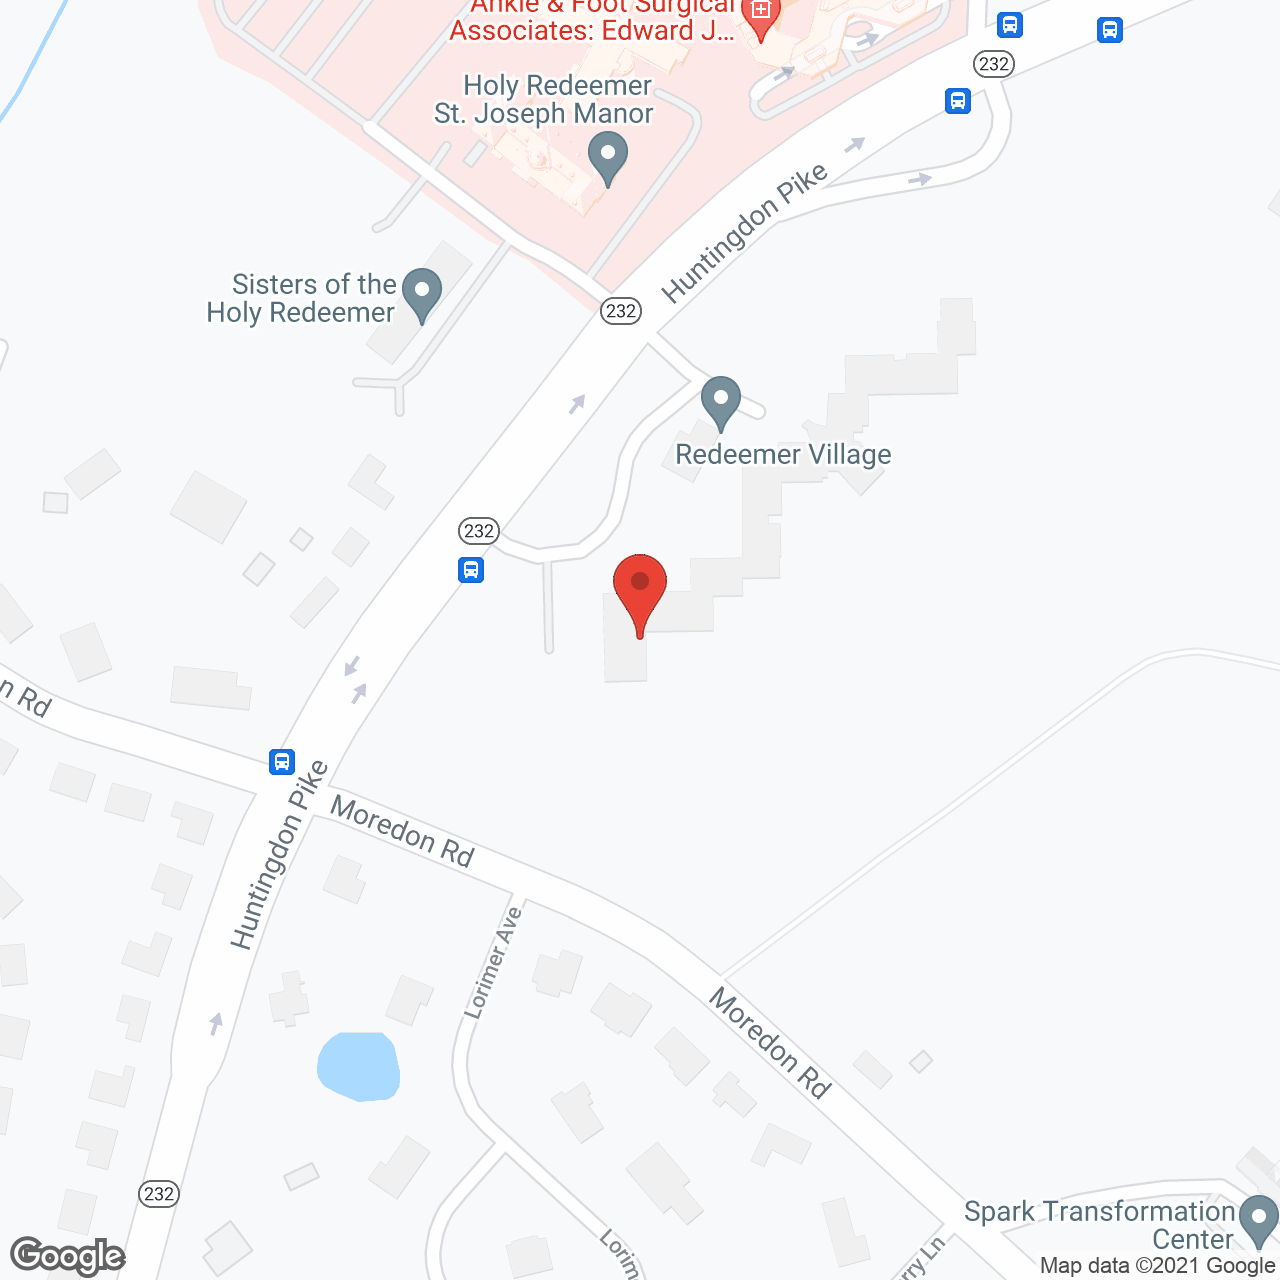 Redeemer Village in google map